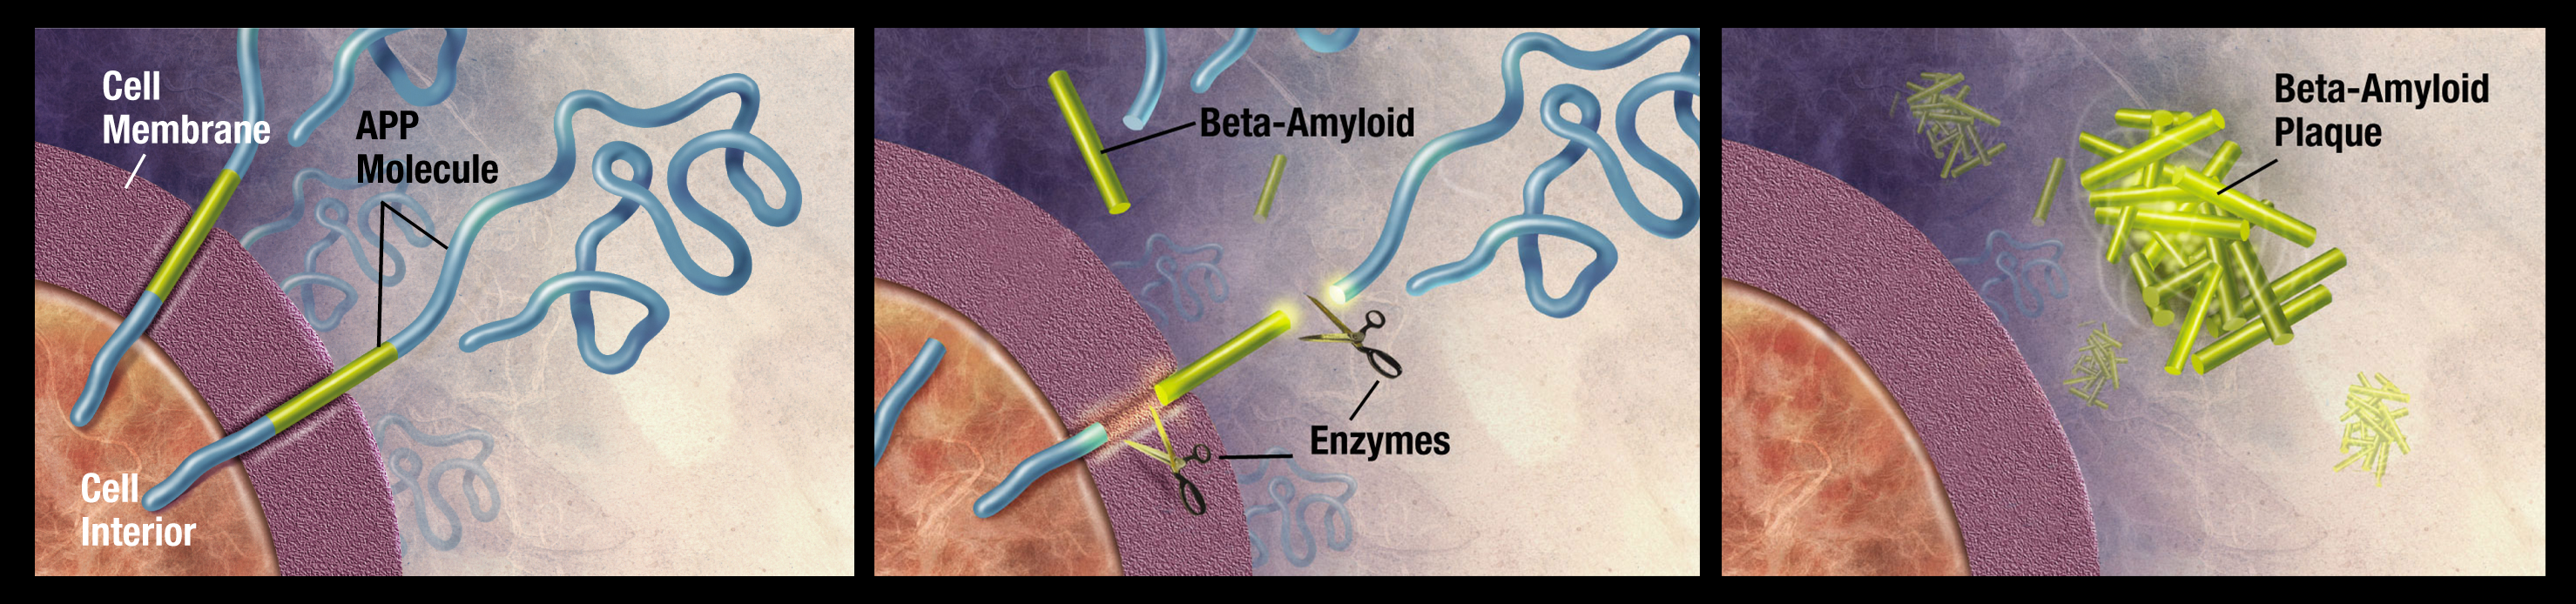 Схематично представяне на формирането на бета-амилоида и бета-амилоидните плаки. APP е прекурсорът на бета-амилоидния протеин (жълто).